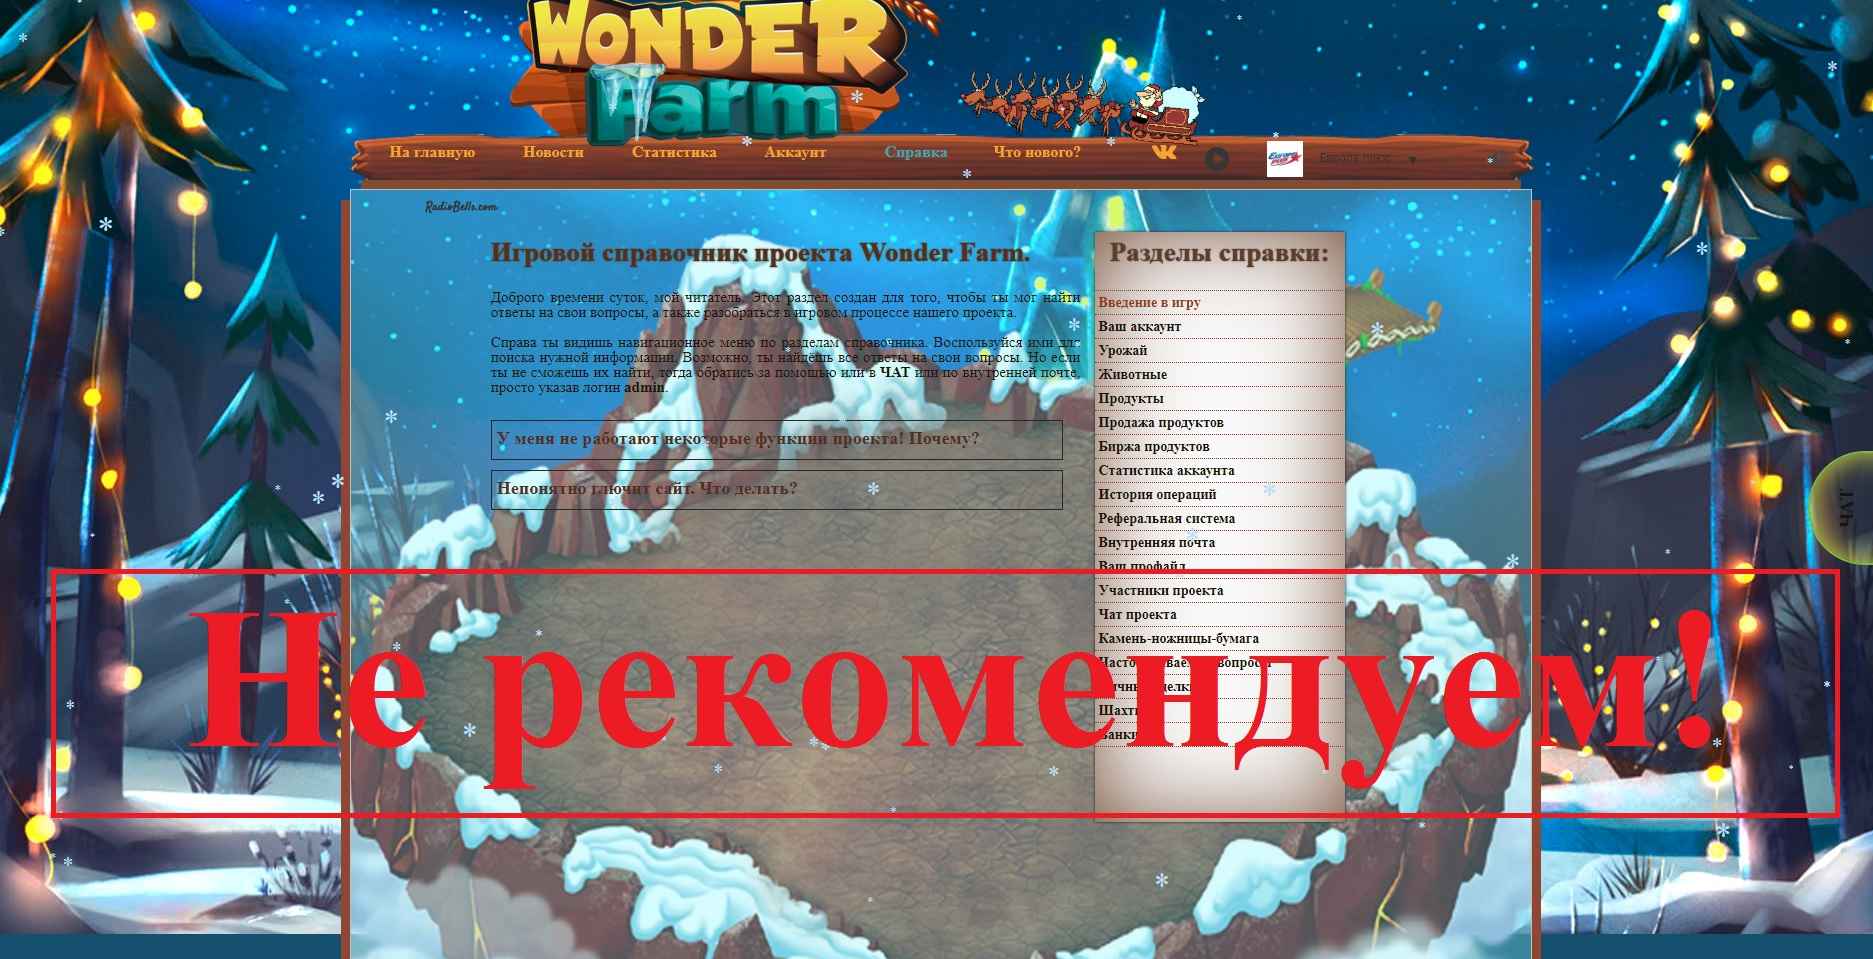 Wonder-Farm – экономическая игра с выводом денег. Отзывы о wonder-farm.biz